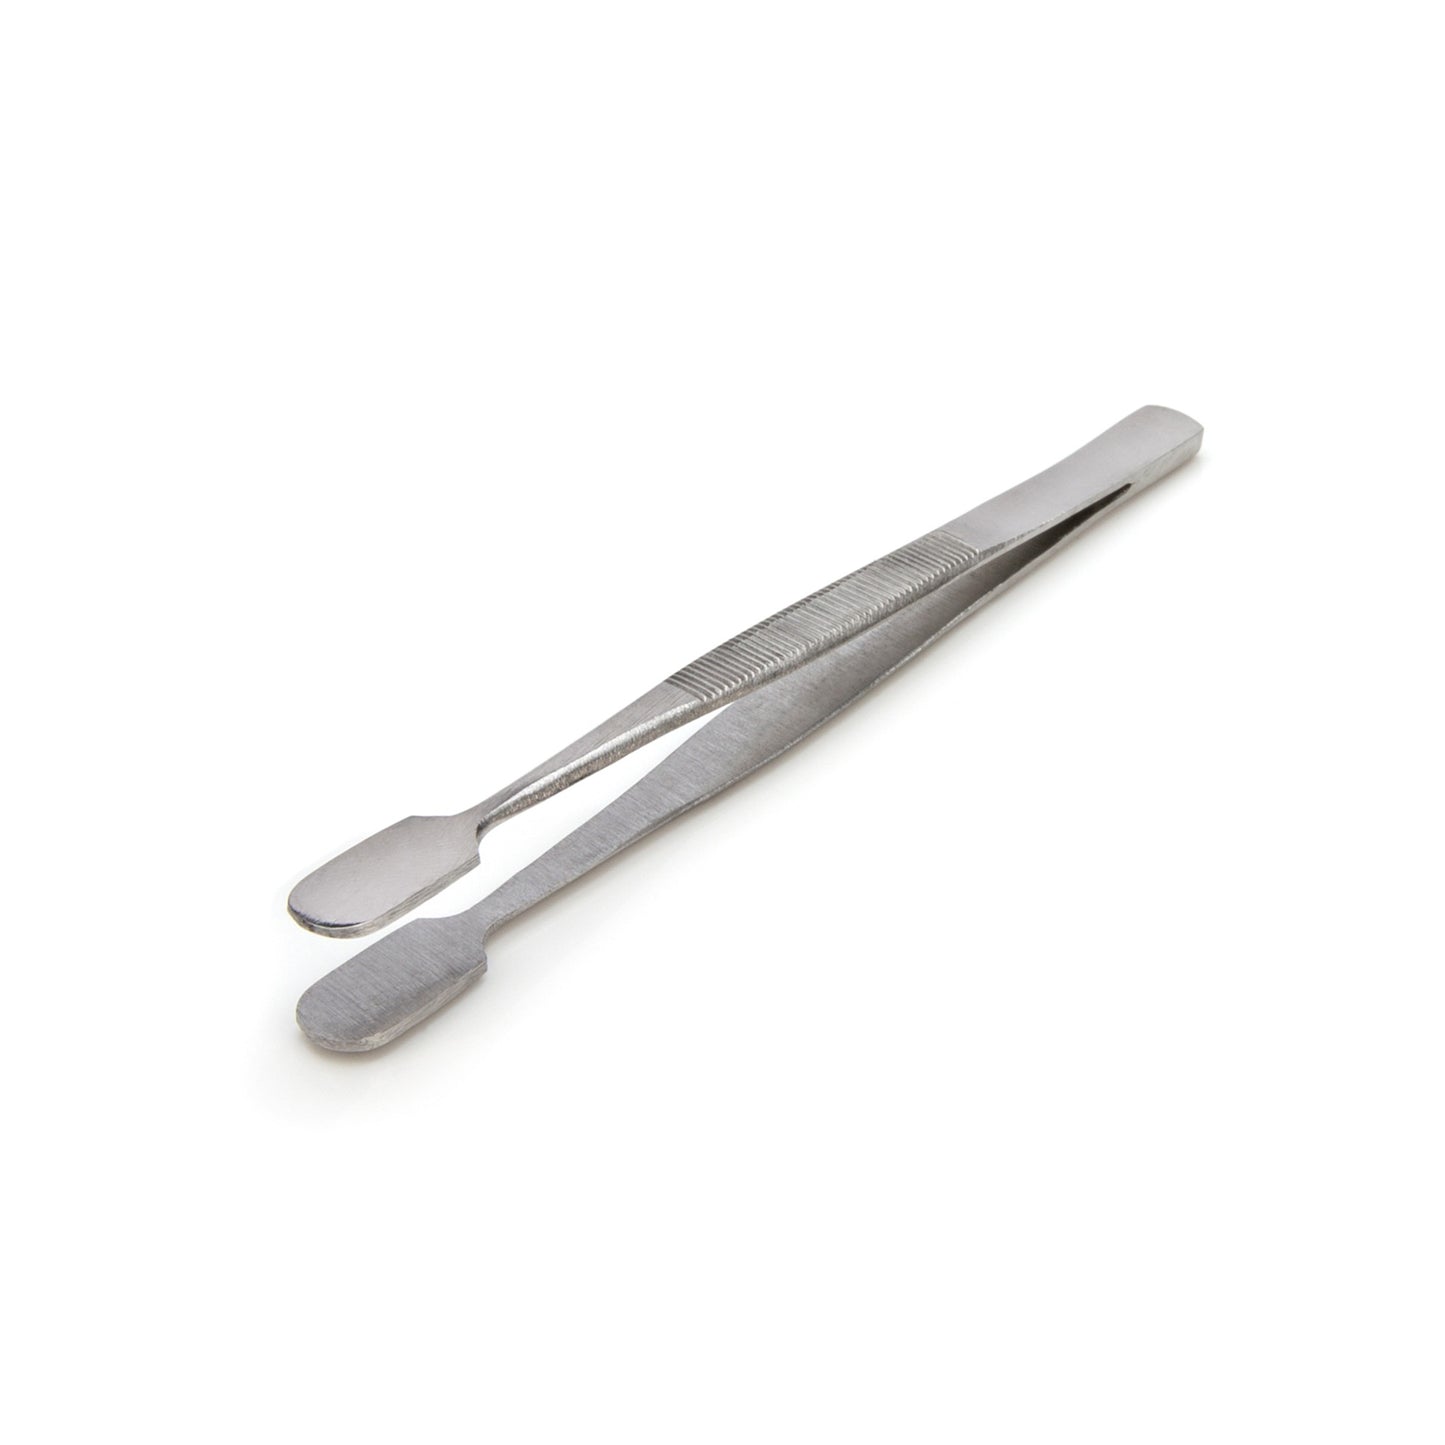 Steelman 05607 4.5-Inch Rounded Spade Tip Utility Tweezers